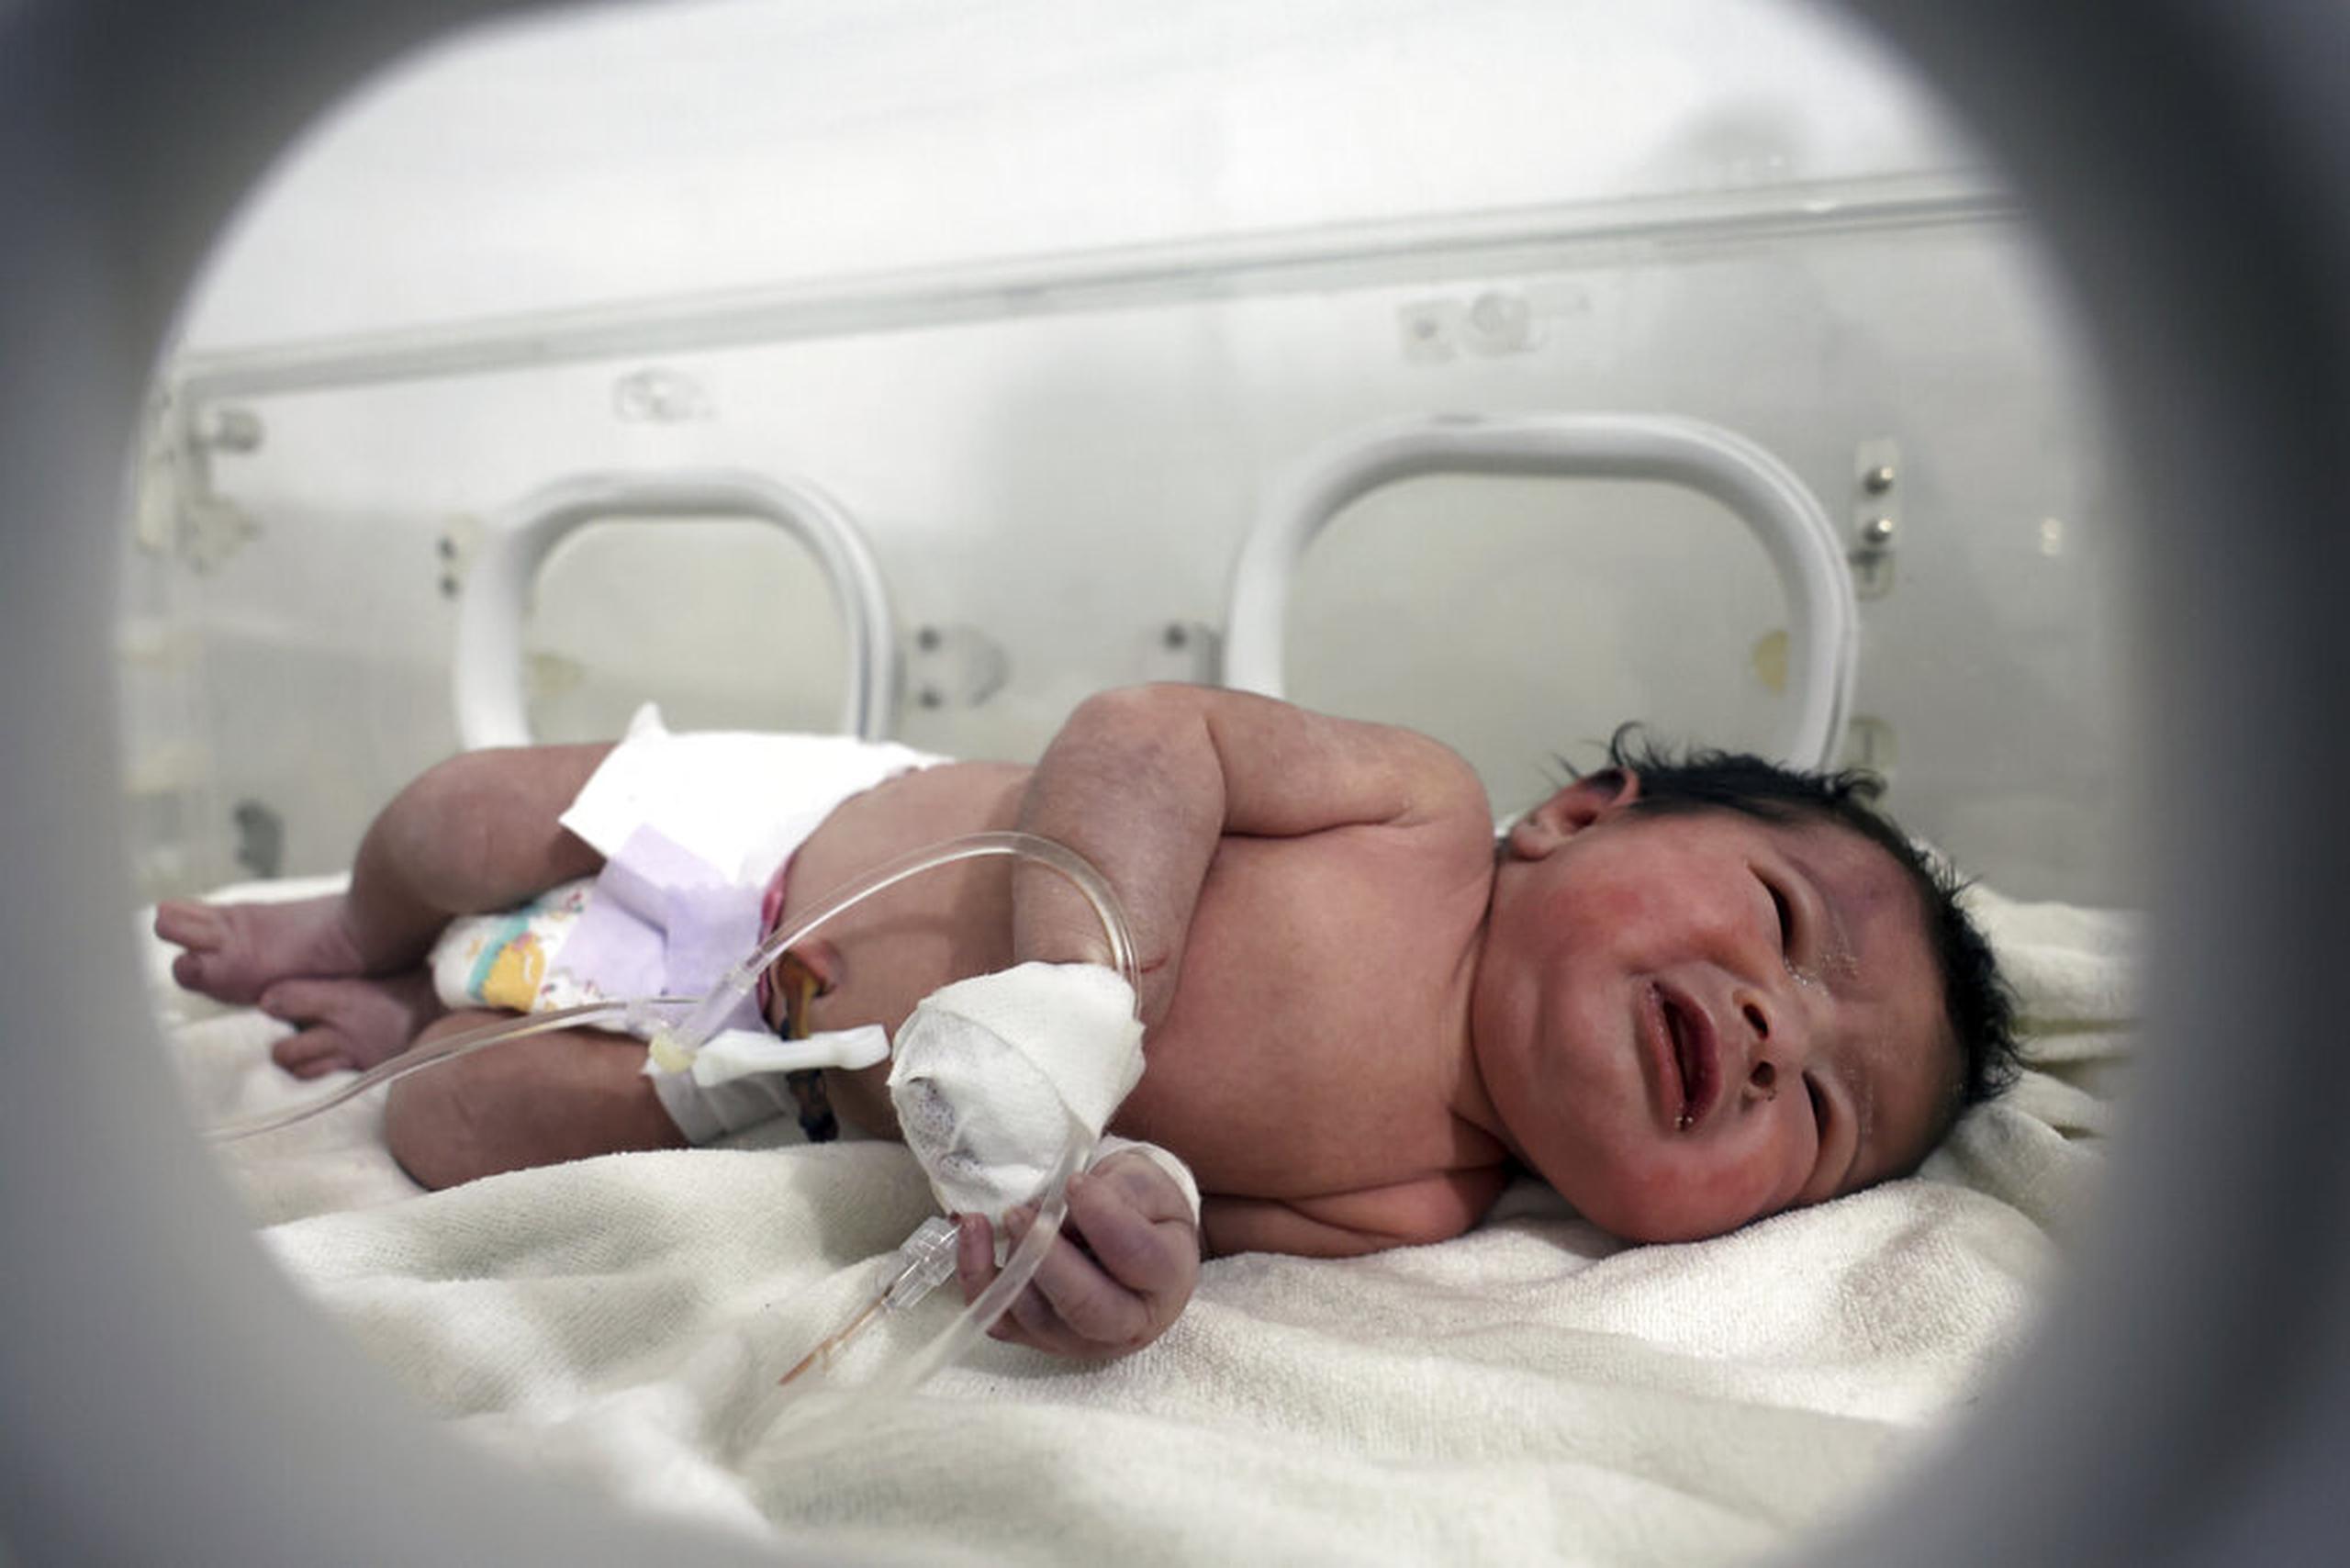 Un día después de llegar al hospital, los funcionarios llamaron a la bebé Aya, que en árabe significa “una señal de Dios”. Después de que su tía la adoptara, la nombraron Afraa, como su madre fallecida.